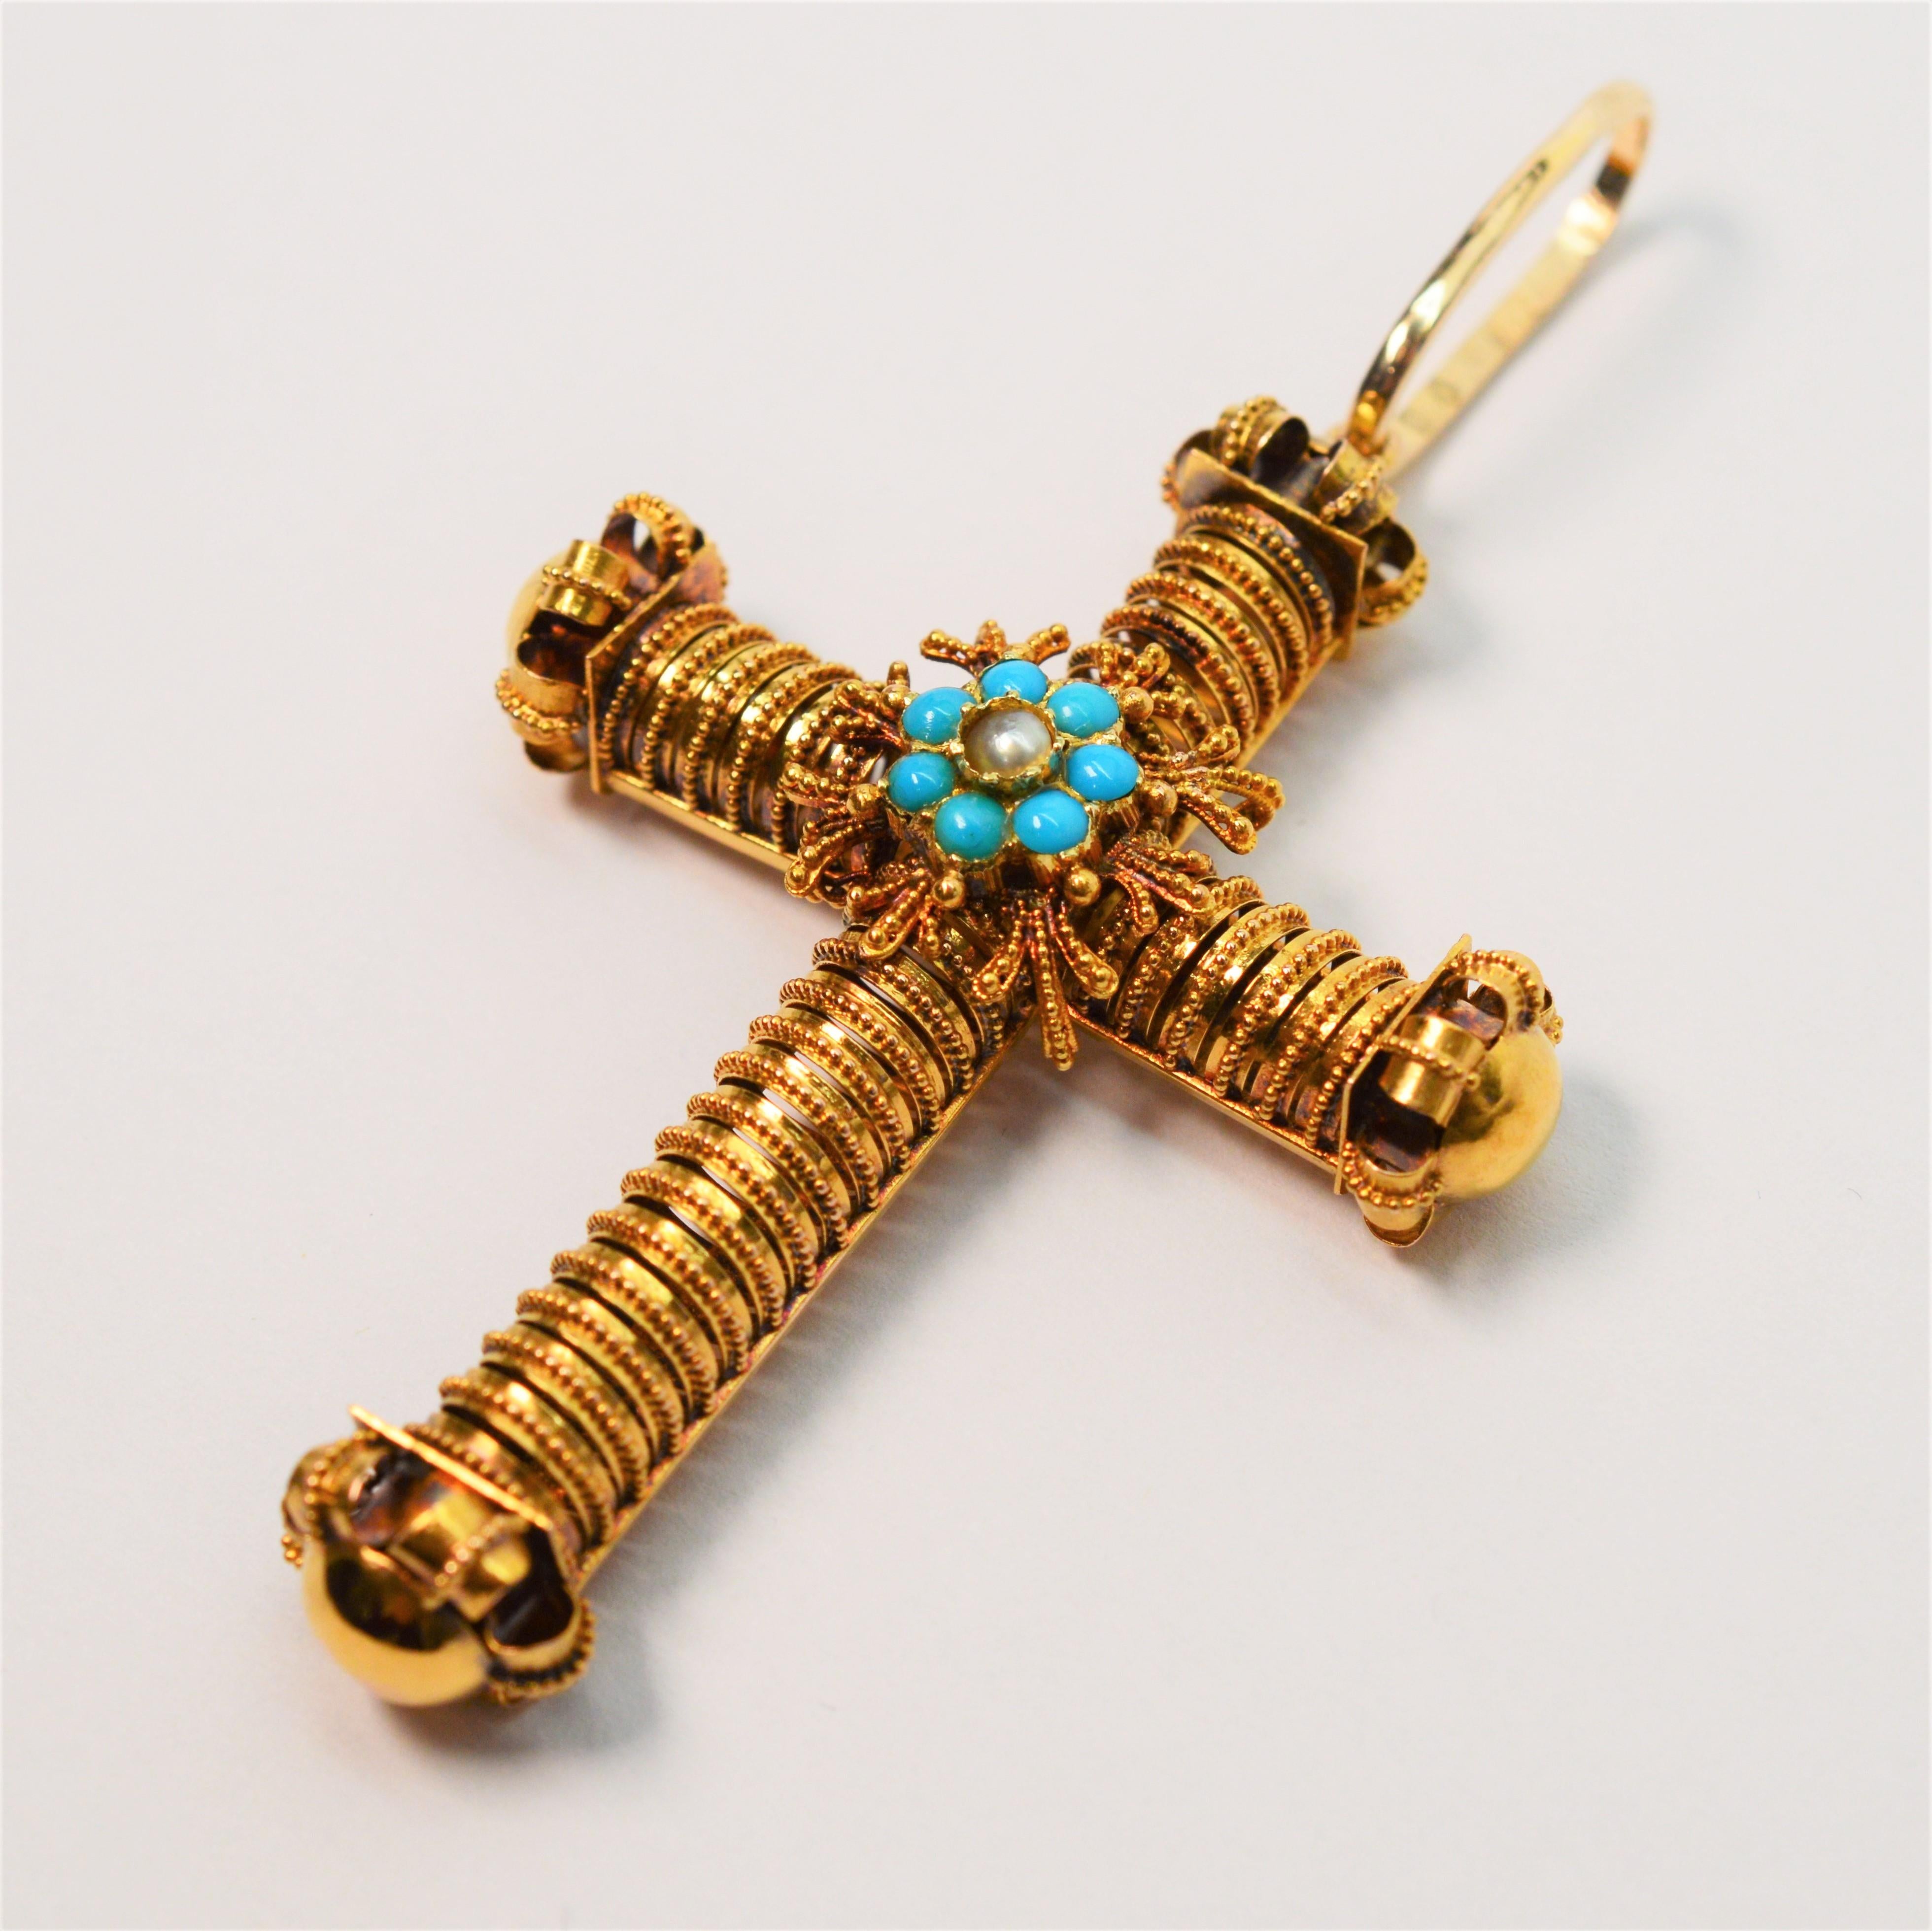 Magnifique pendentif en forme de croix orné en or jaune 14 carats de fabrication italienne, agrémenté de turquoises et de perles. Cette breloque inhabituelle est assemblée à la main et mesure un généreux 2-1/4 x 1-1/4 inch. Équipé d'une nouvelle